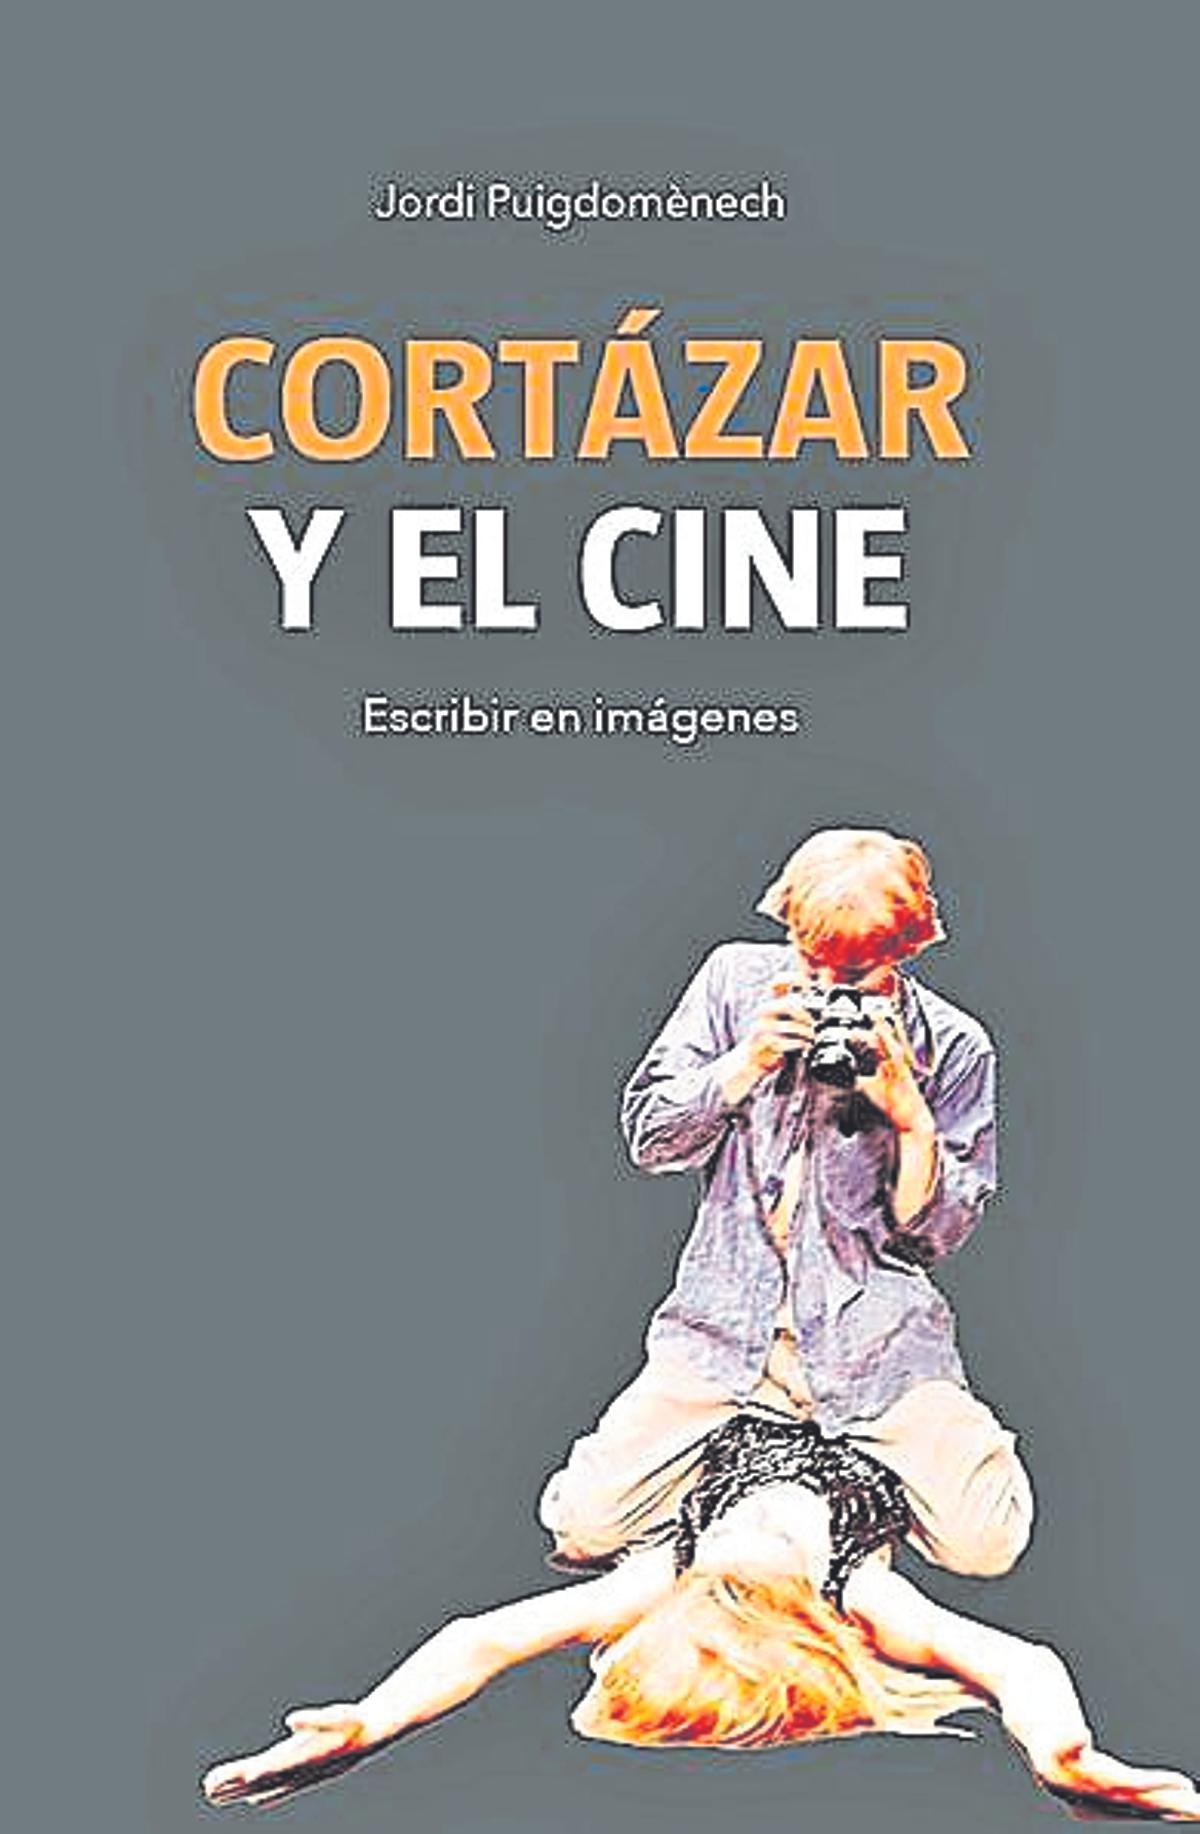 Jordi Puigdomenech  Cortázar y el cine. Escribir en imágenes   Ediciones JC   226 páginas / 16 euros